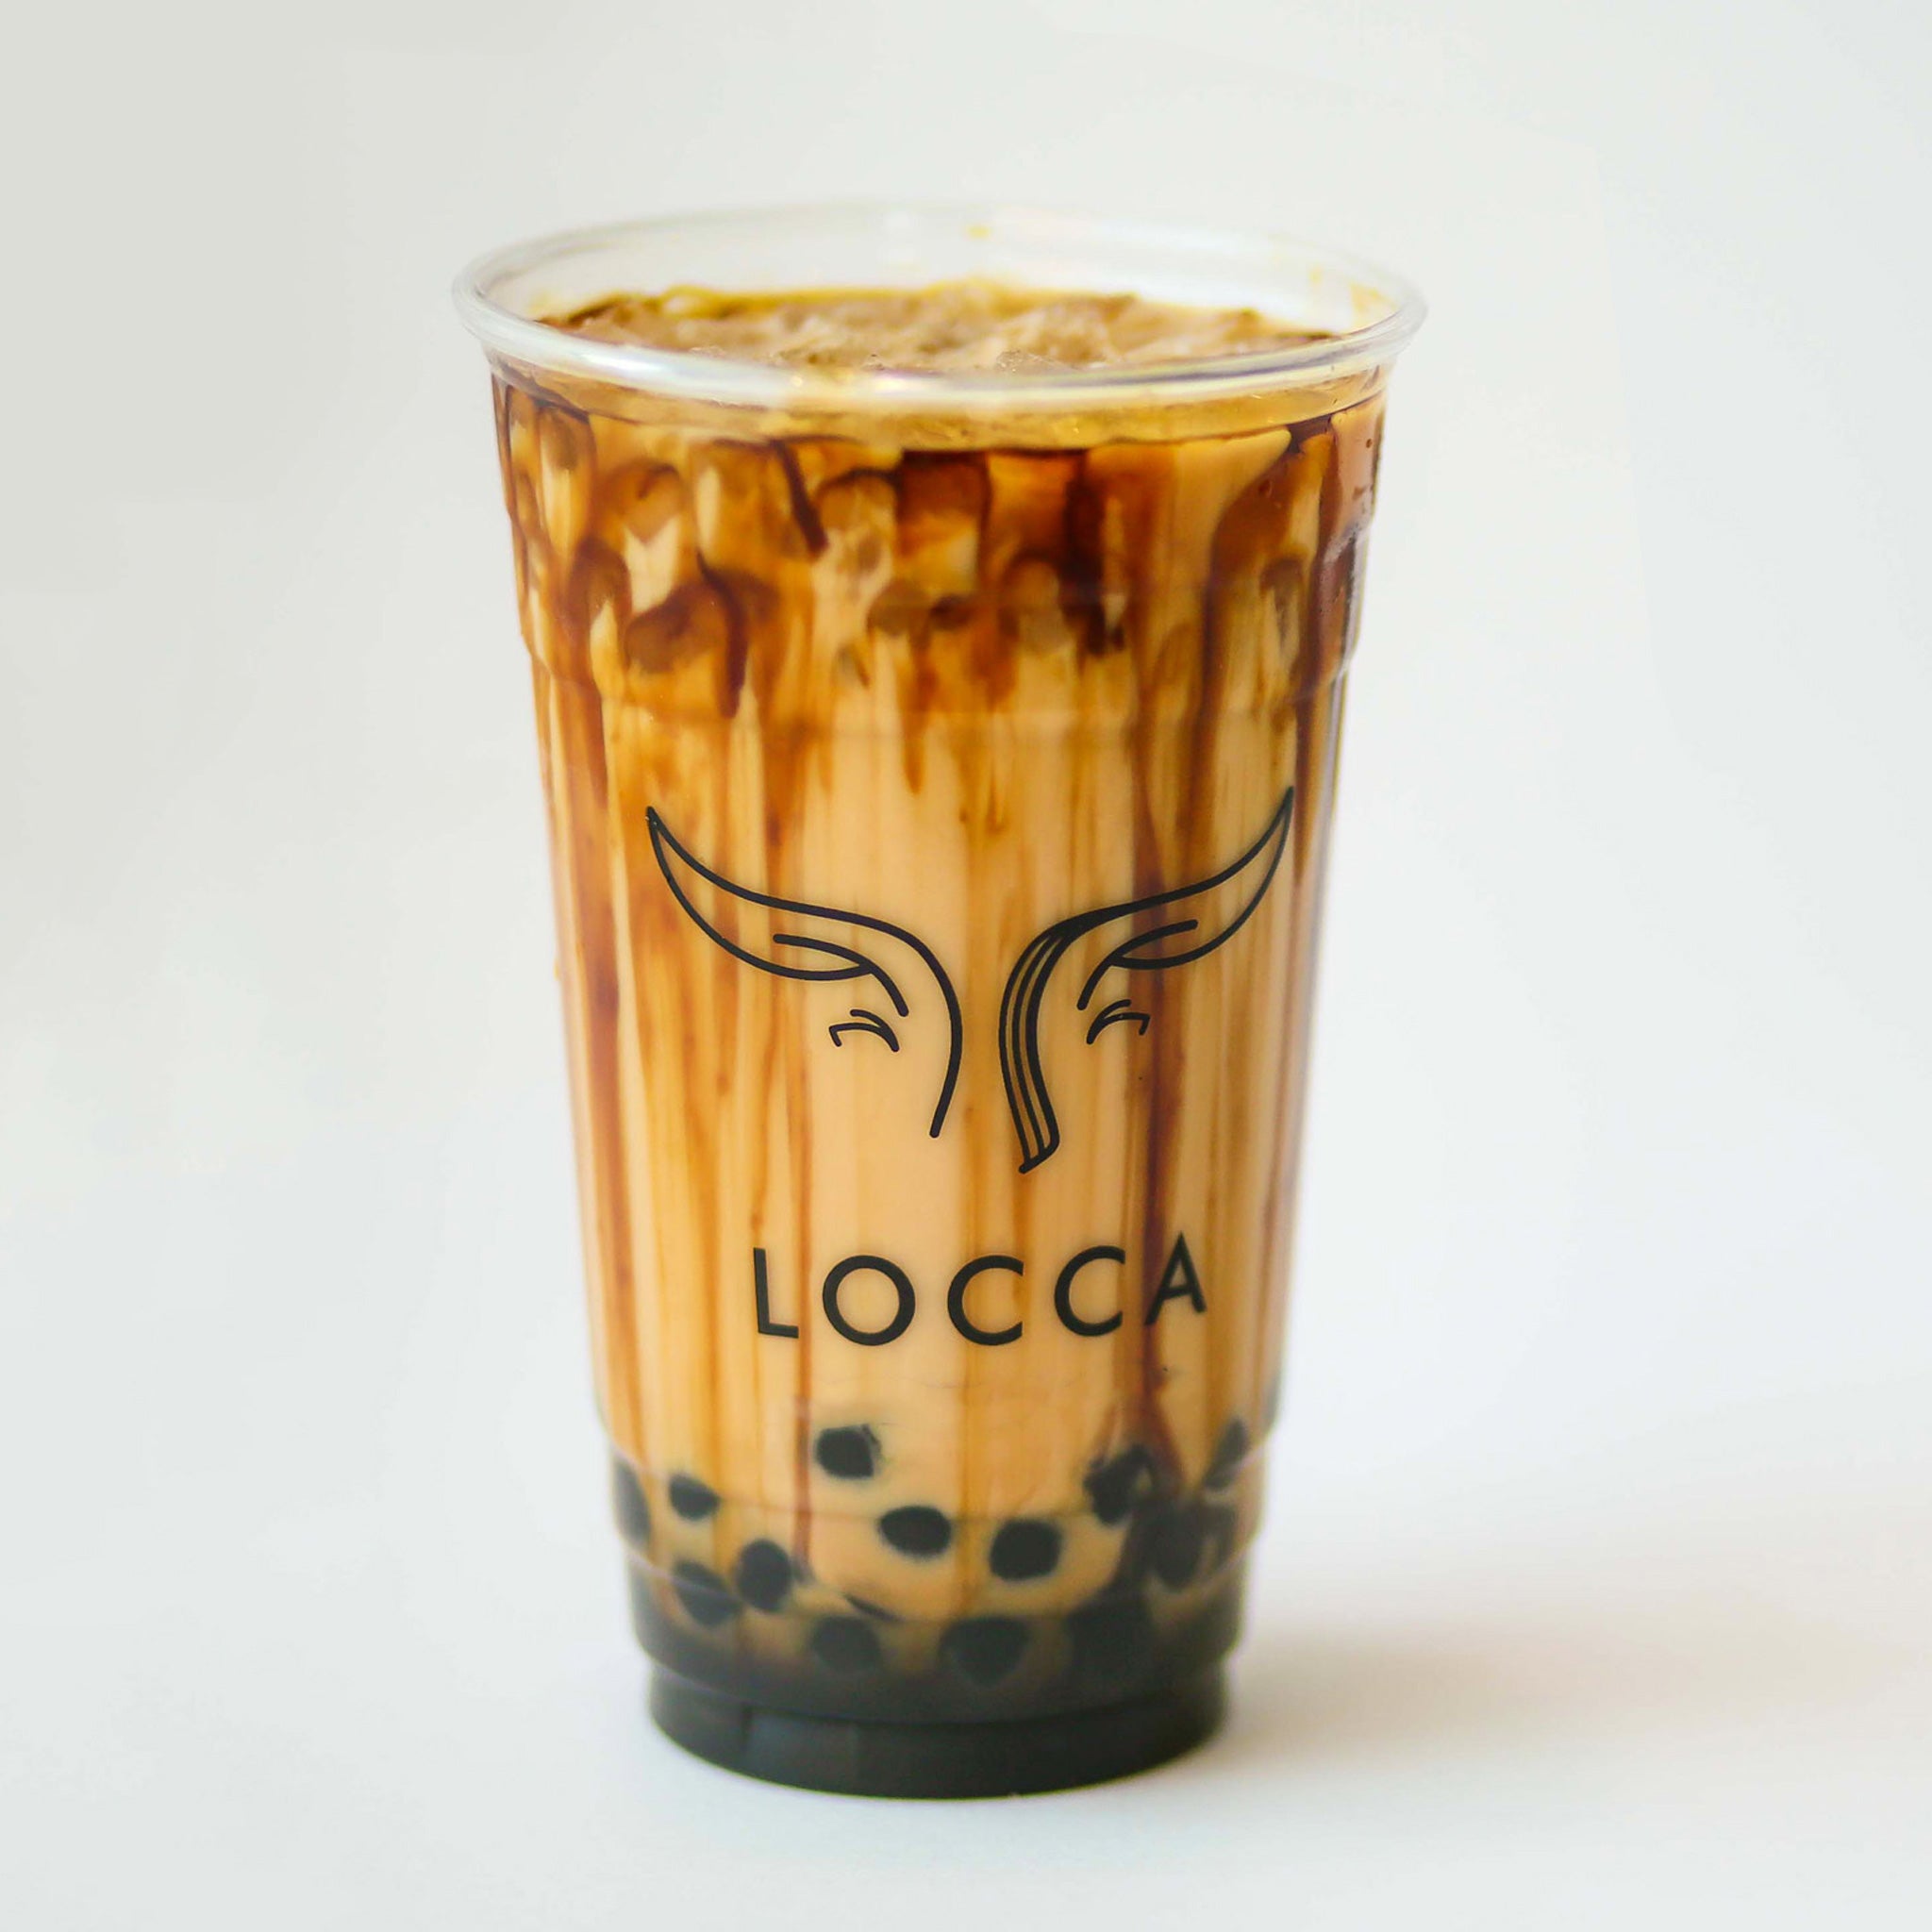 Locca Brown Sugar Boba Tea Kit | Best Boba Tea Kit